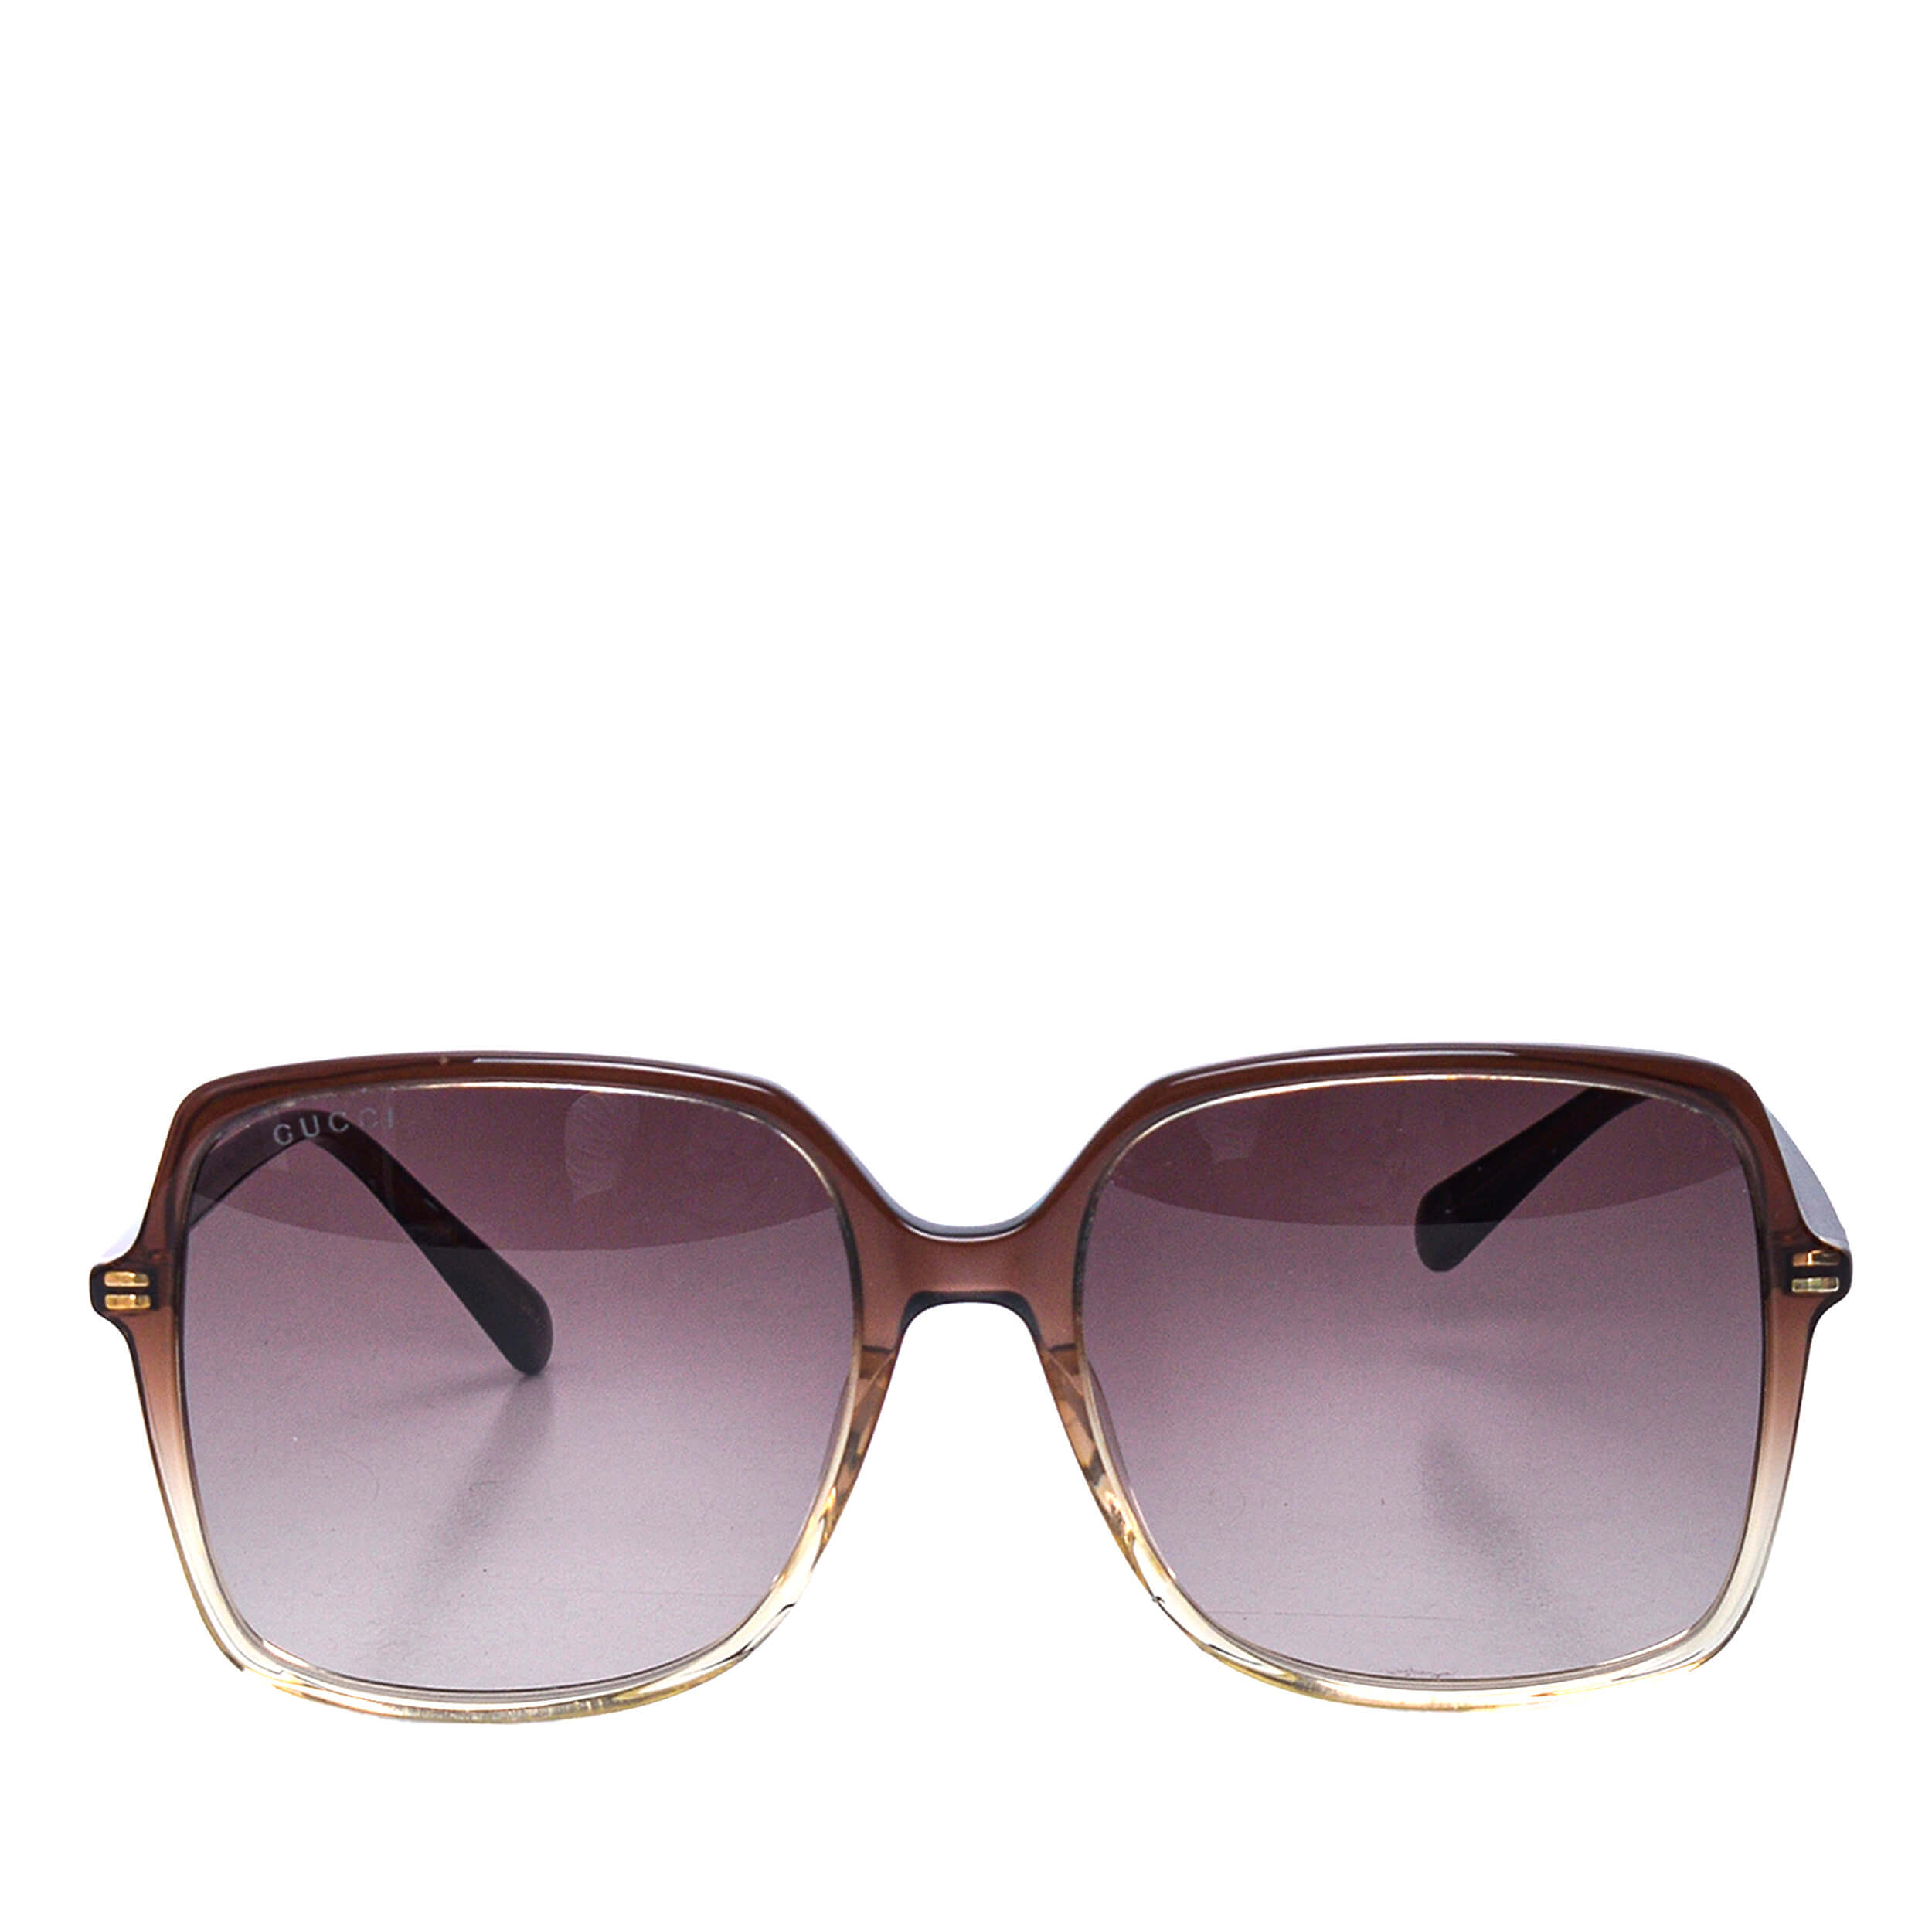 Gucci - Brown Degrade Frame Square Sunglasses